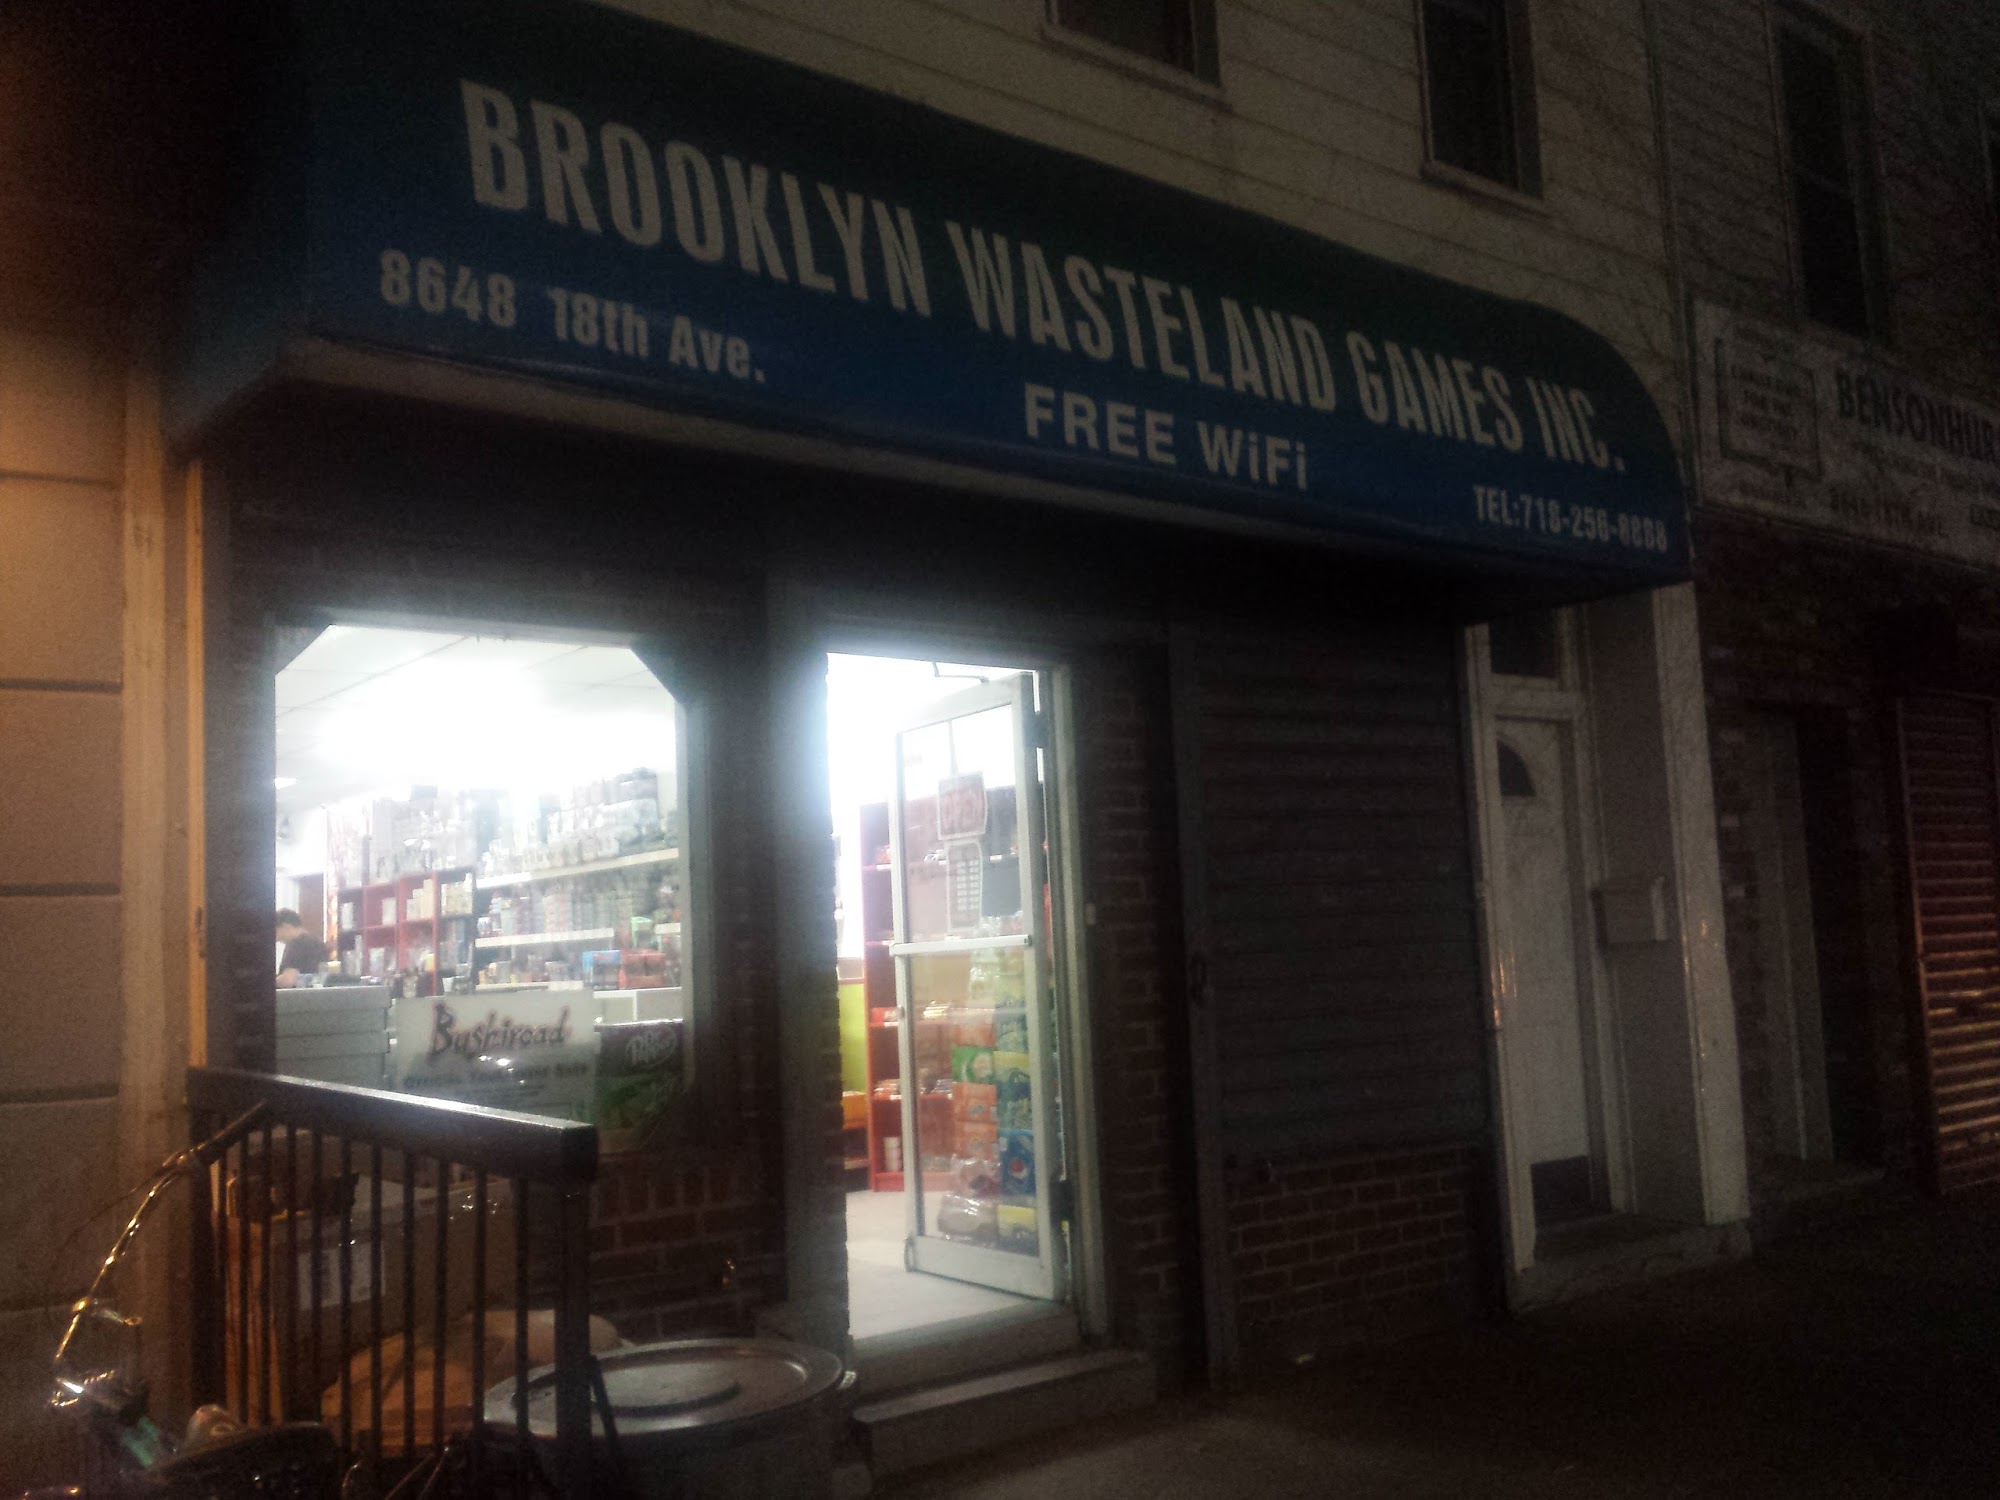 Brooklyn Wasteland Games